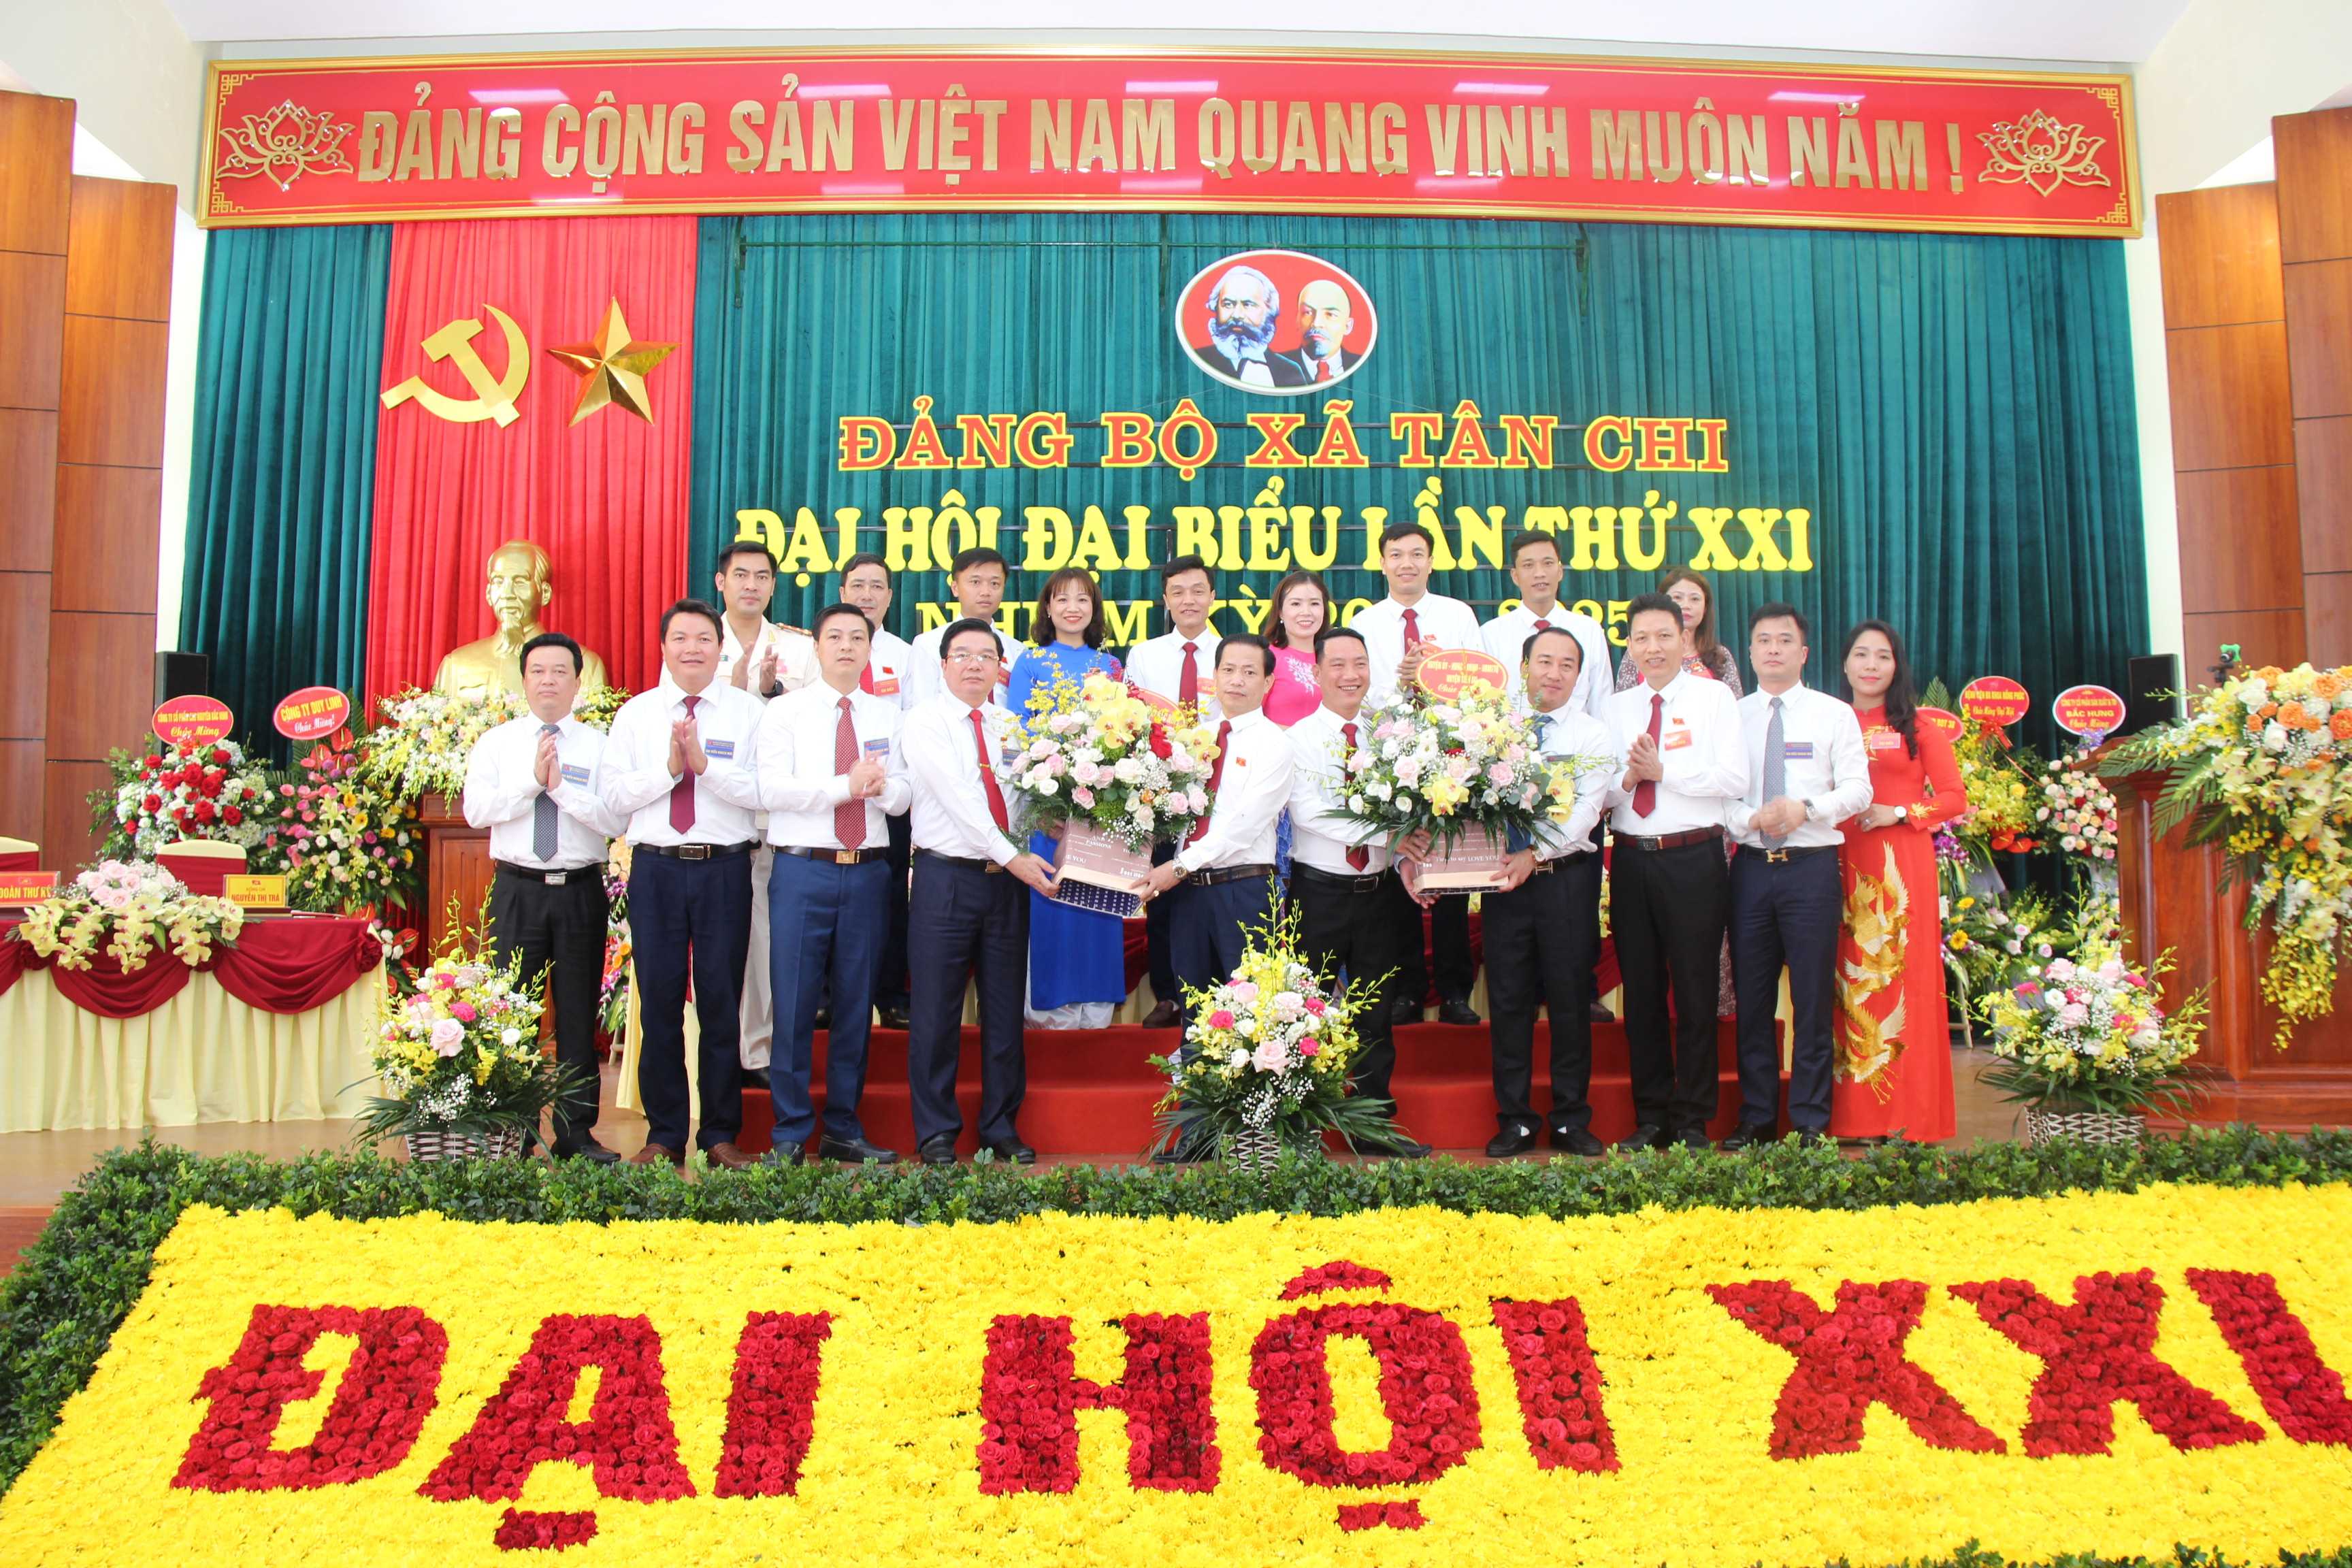 Đại hội đại biểu Đảng bộ xã Tân Chi lần thứ XXI, nhiệm kỳ 2020 - 2025